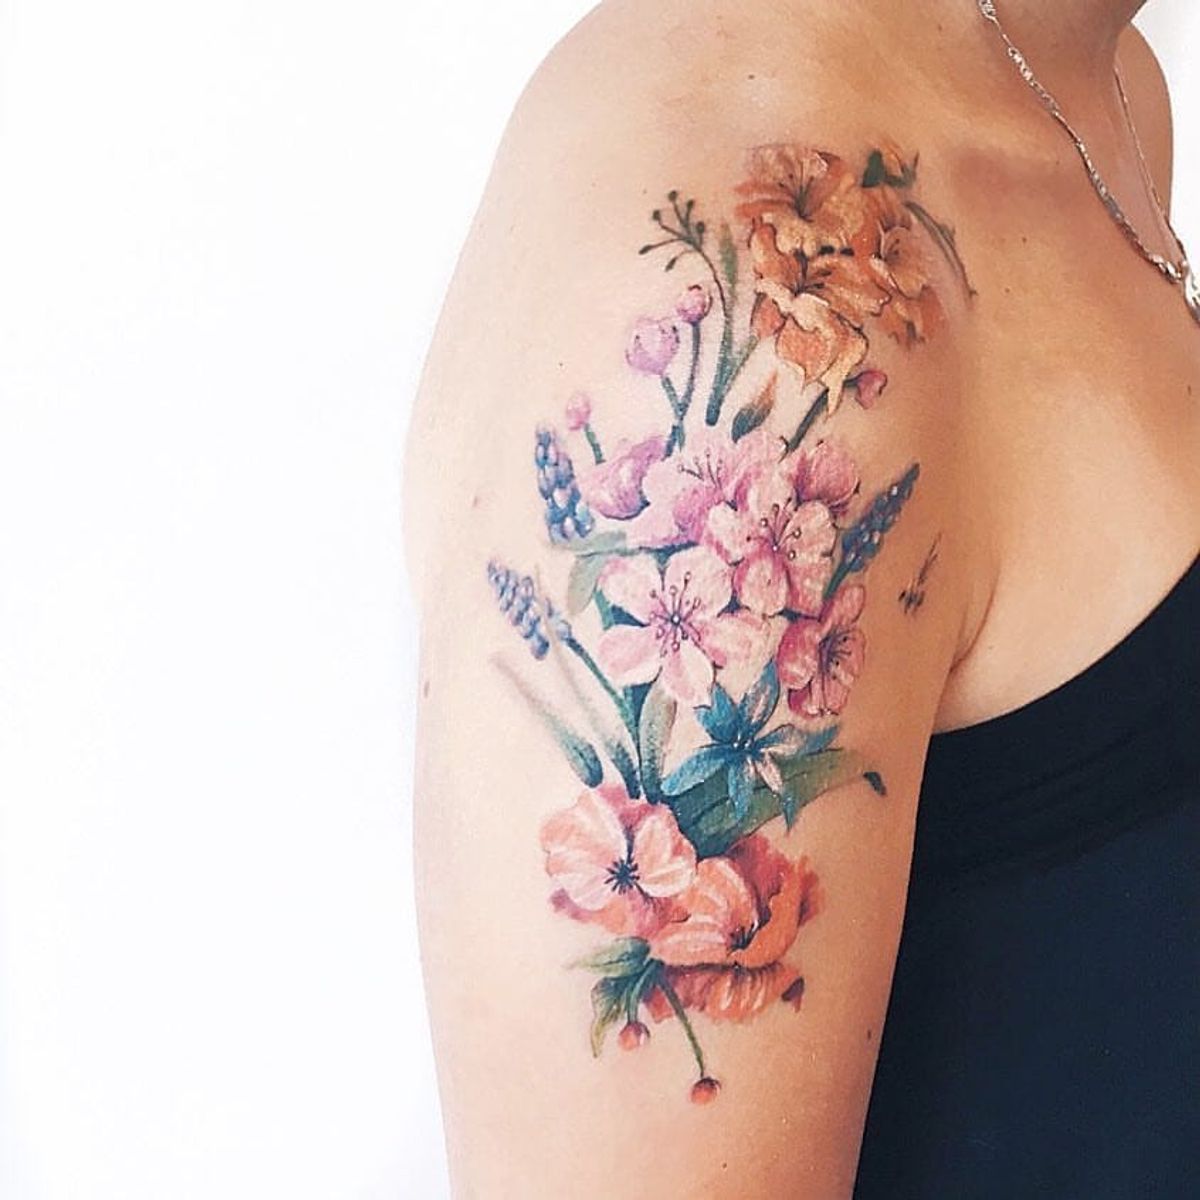 Tattoo uploaded by Luiza Siqueira • Mais flores #LuizaOliveira # ...